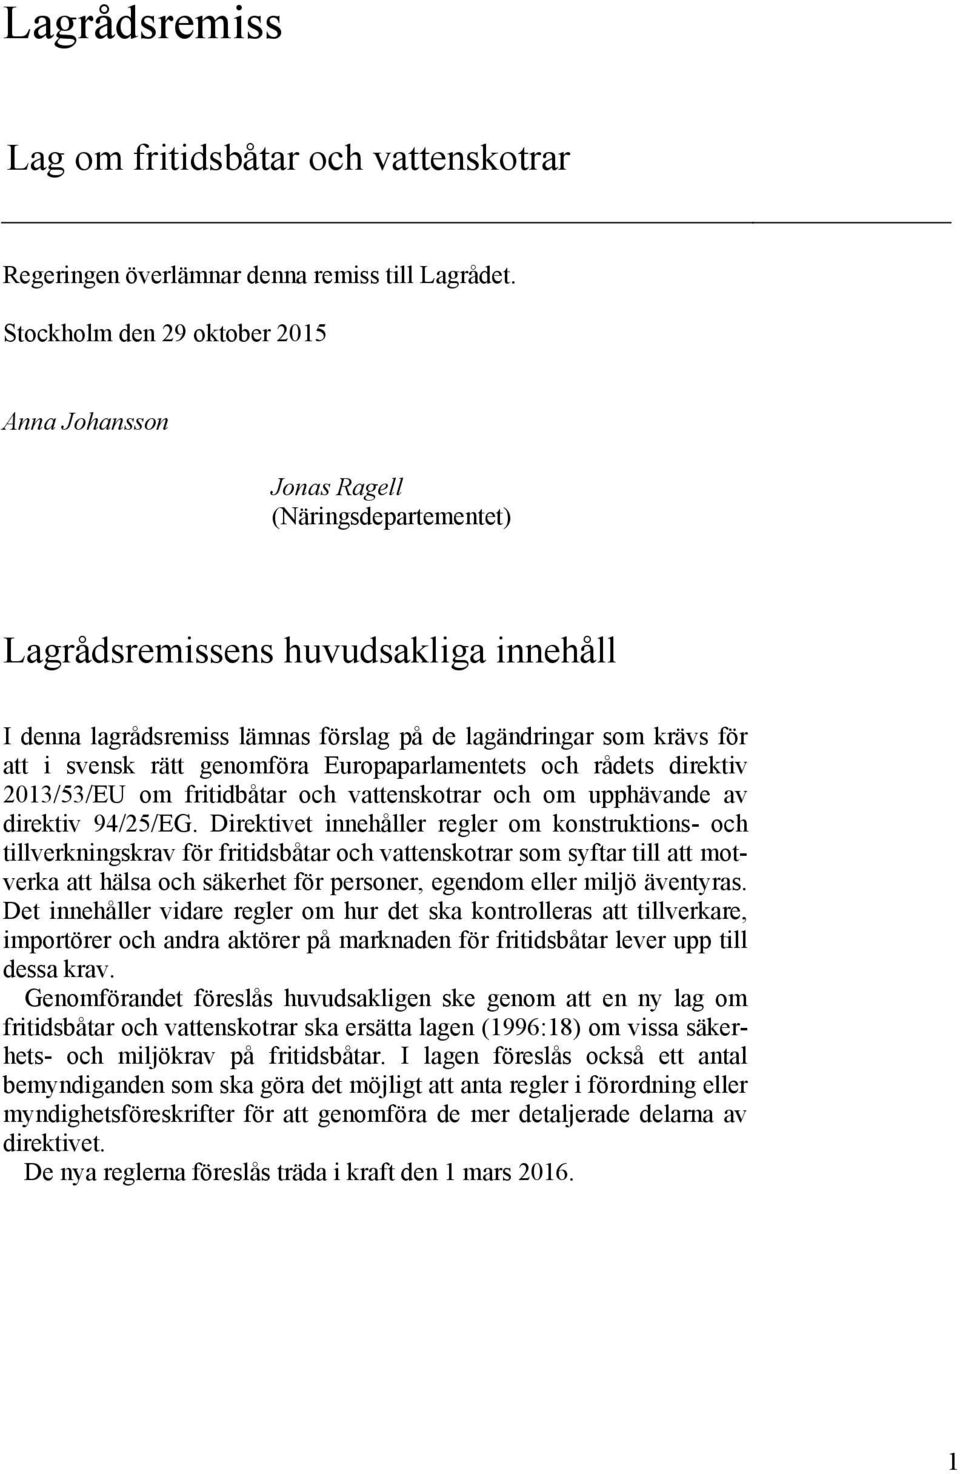 svensk rätt genomföra Europaparlamentets och rådets direktiv 2013/53/EU om fritidbåtar och vattenskotrar och om upphävande av direktiv 94/25/EG.